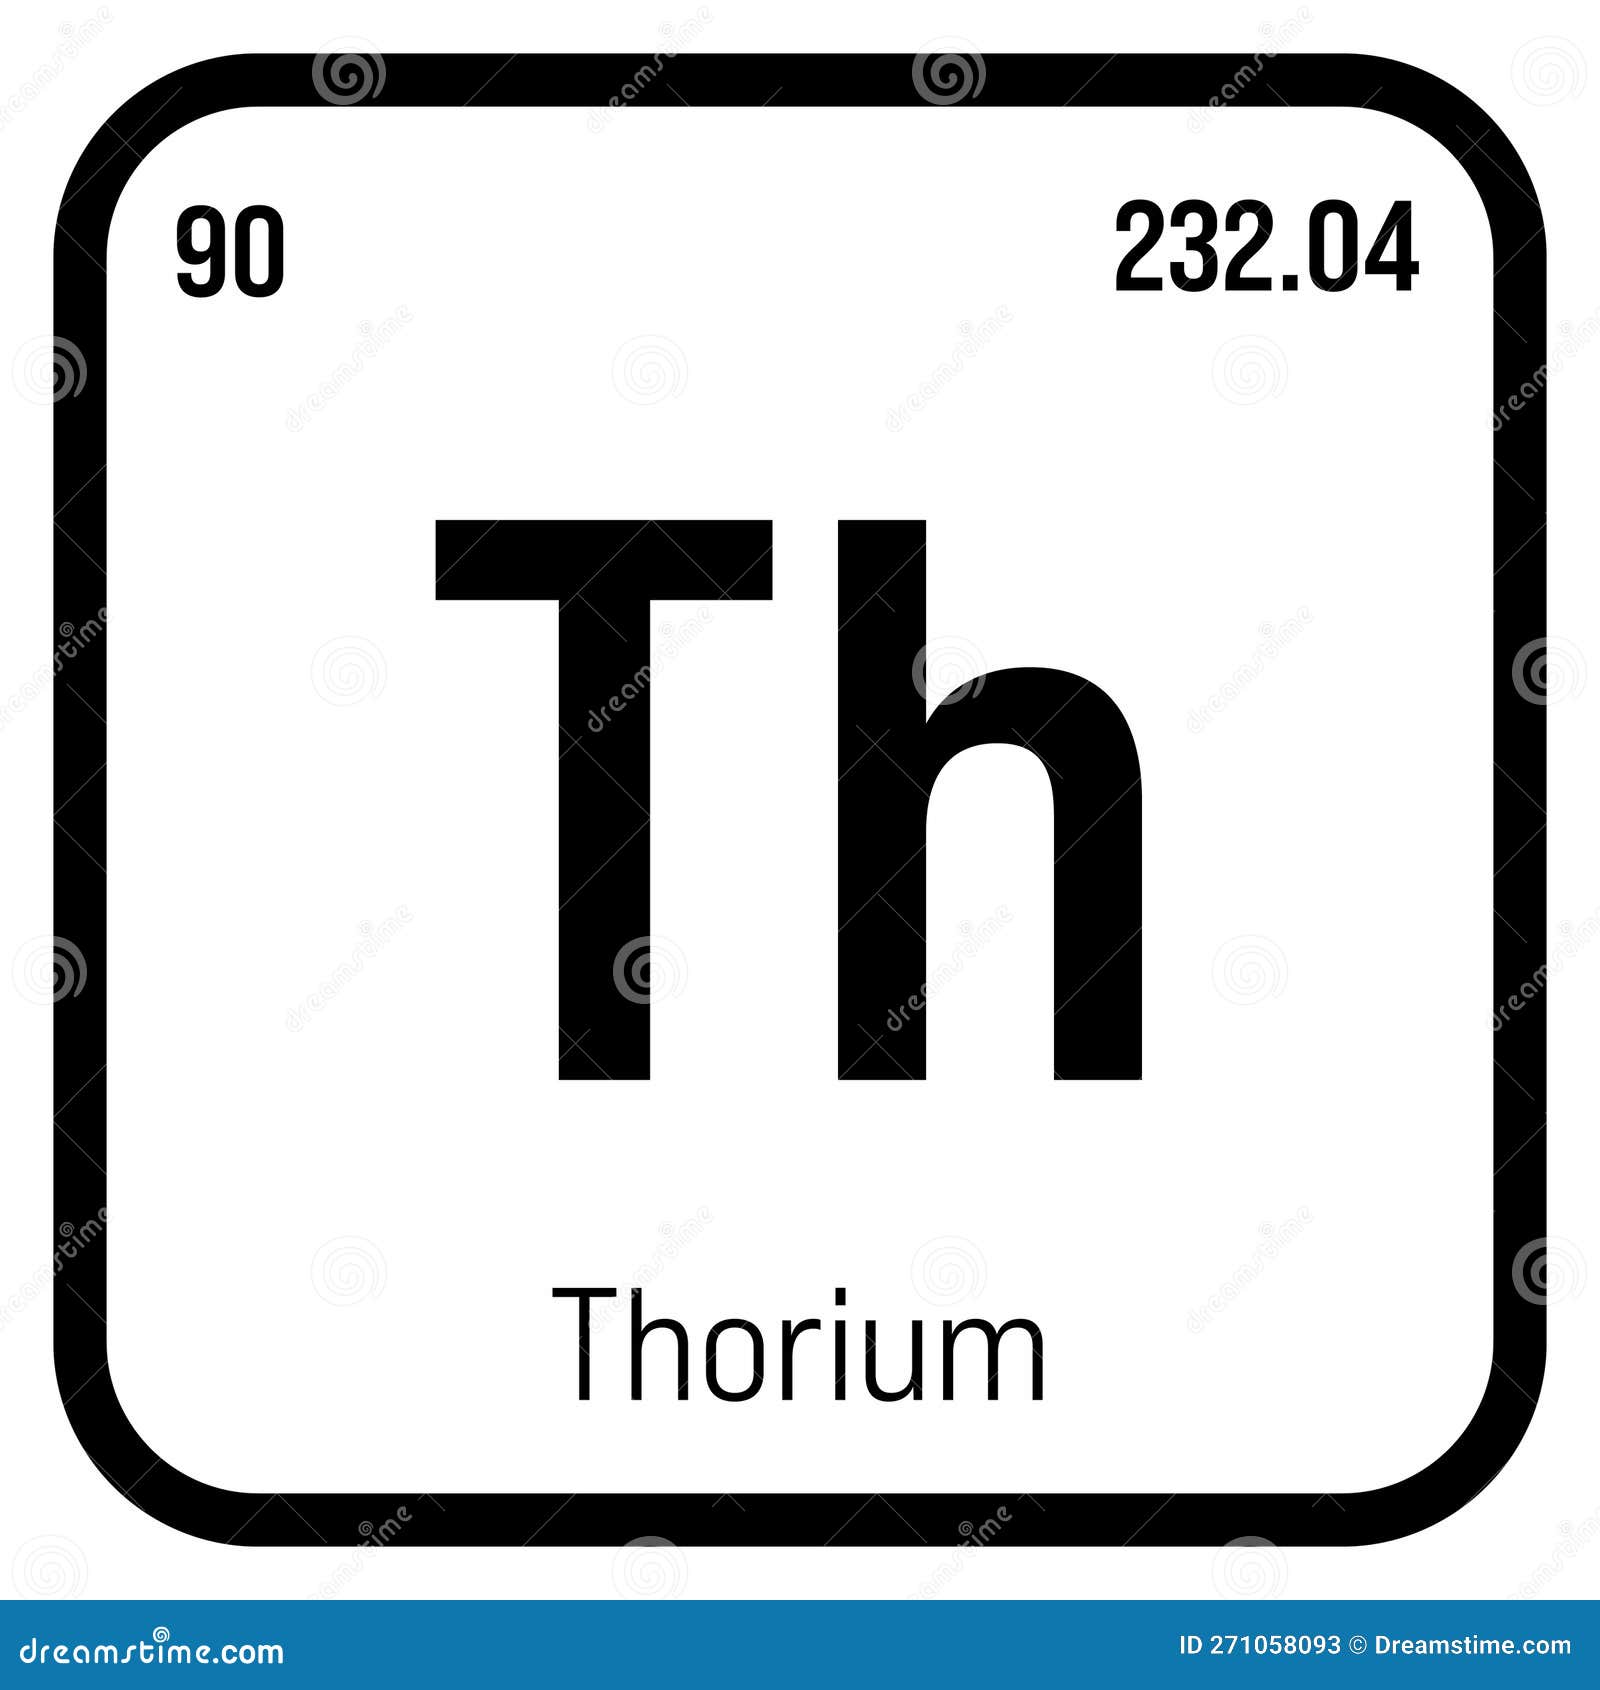 Thorium, Th, Periodic Table Element Stock Illustration - Illustration ...